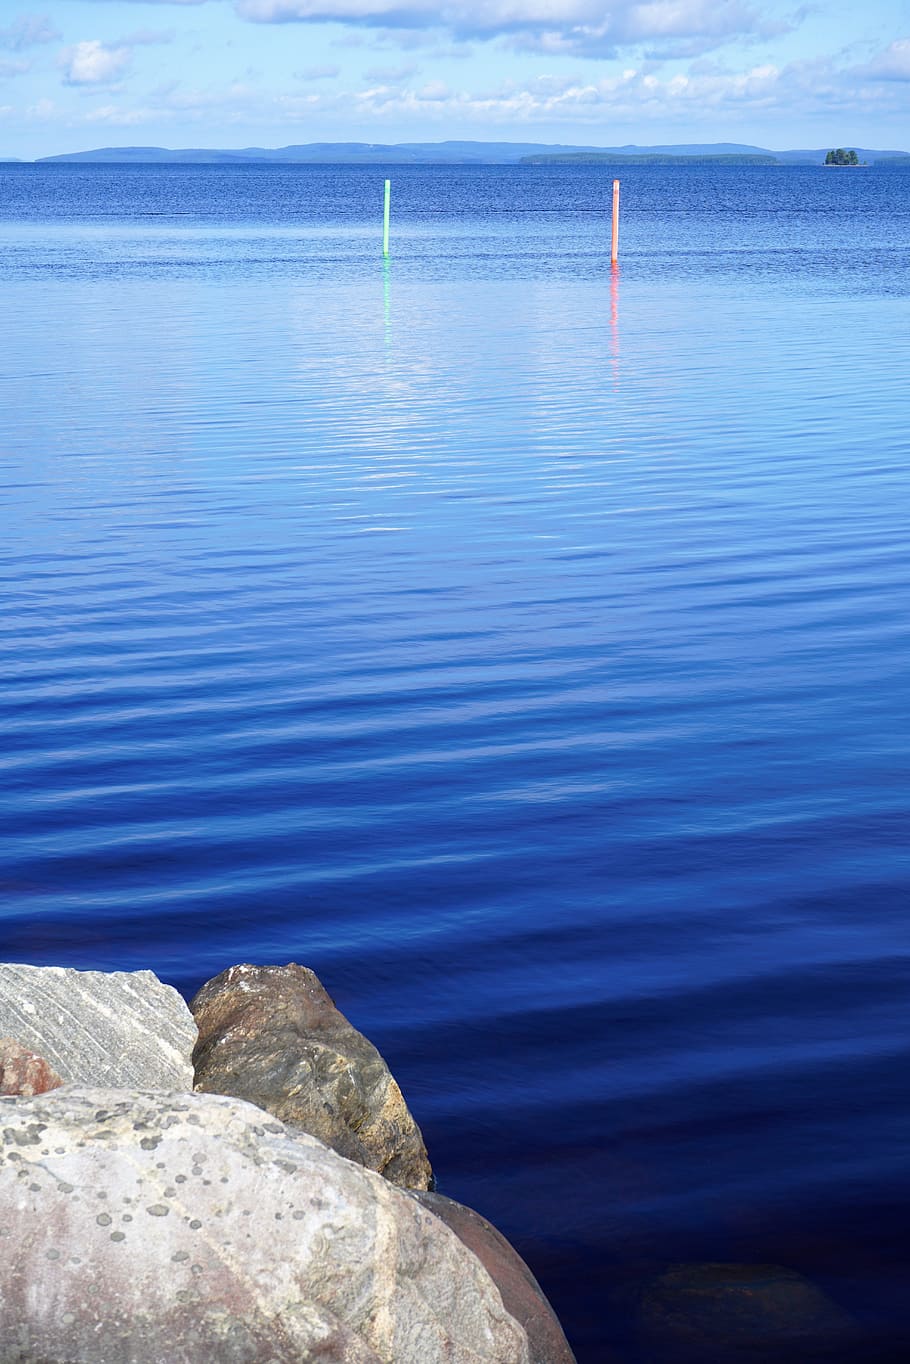 Finlandia, lago, olas, agua, mar, roca, azul, roca - objeto, belleza en la naturaleza, día